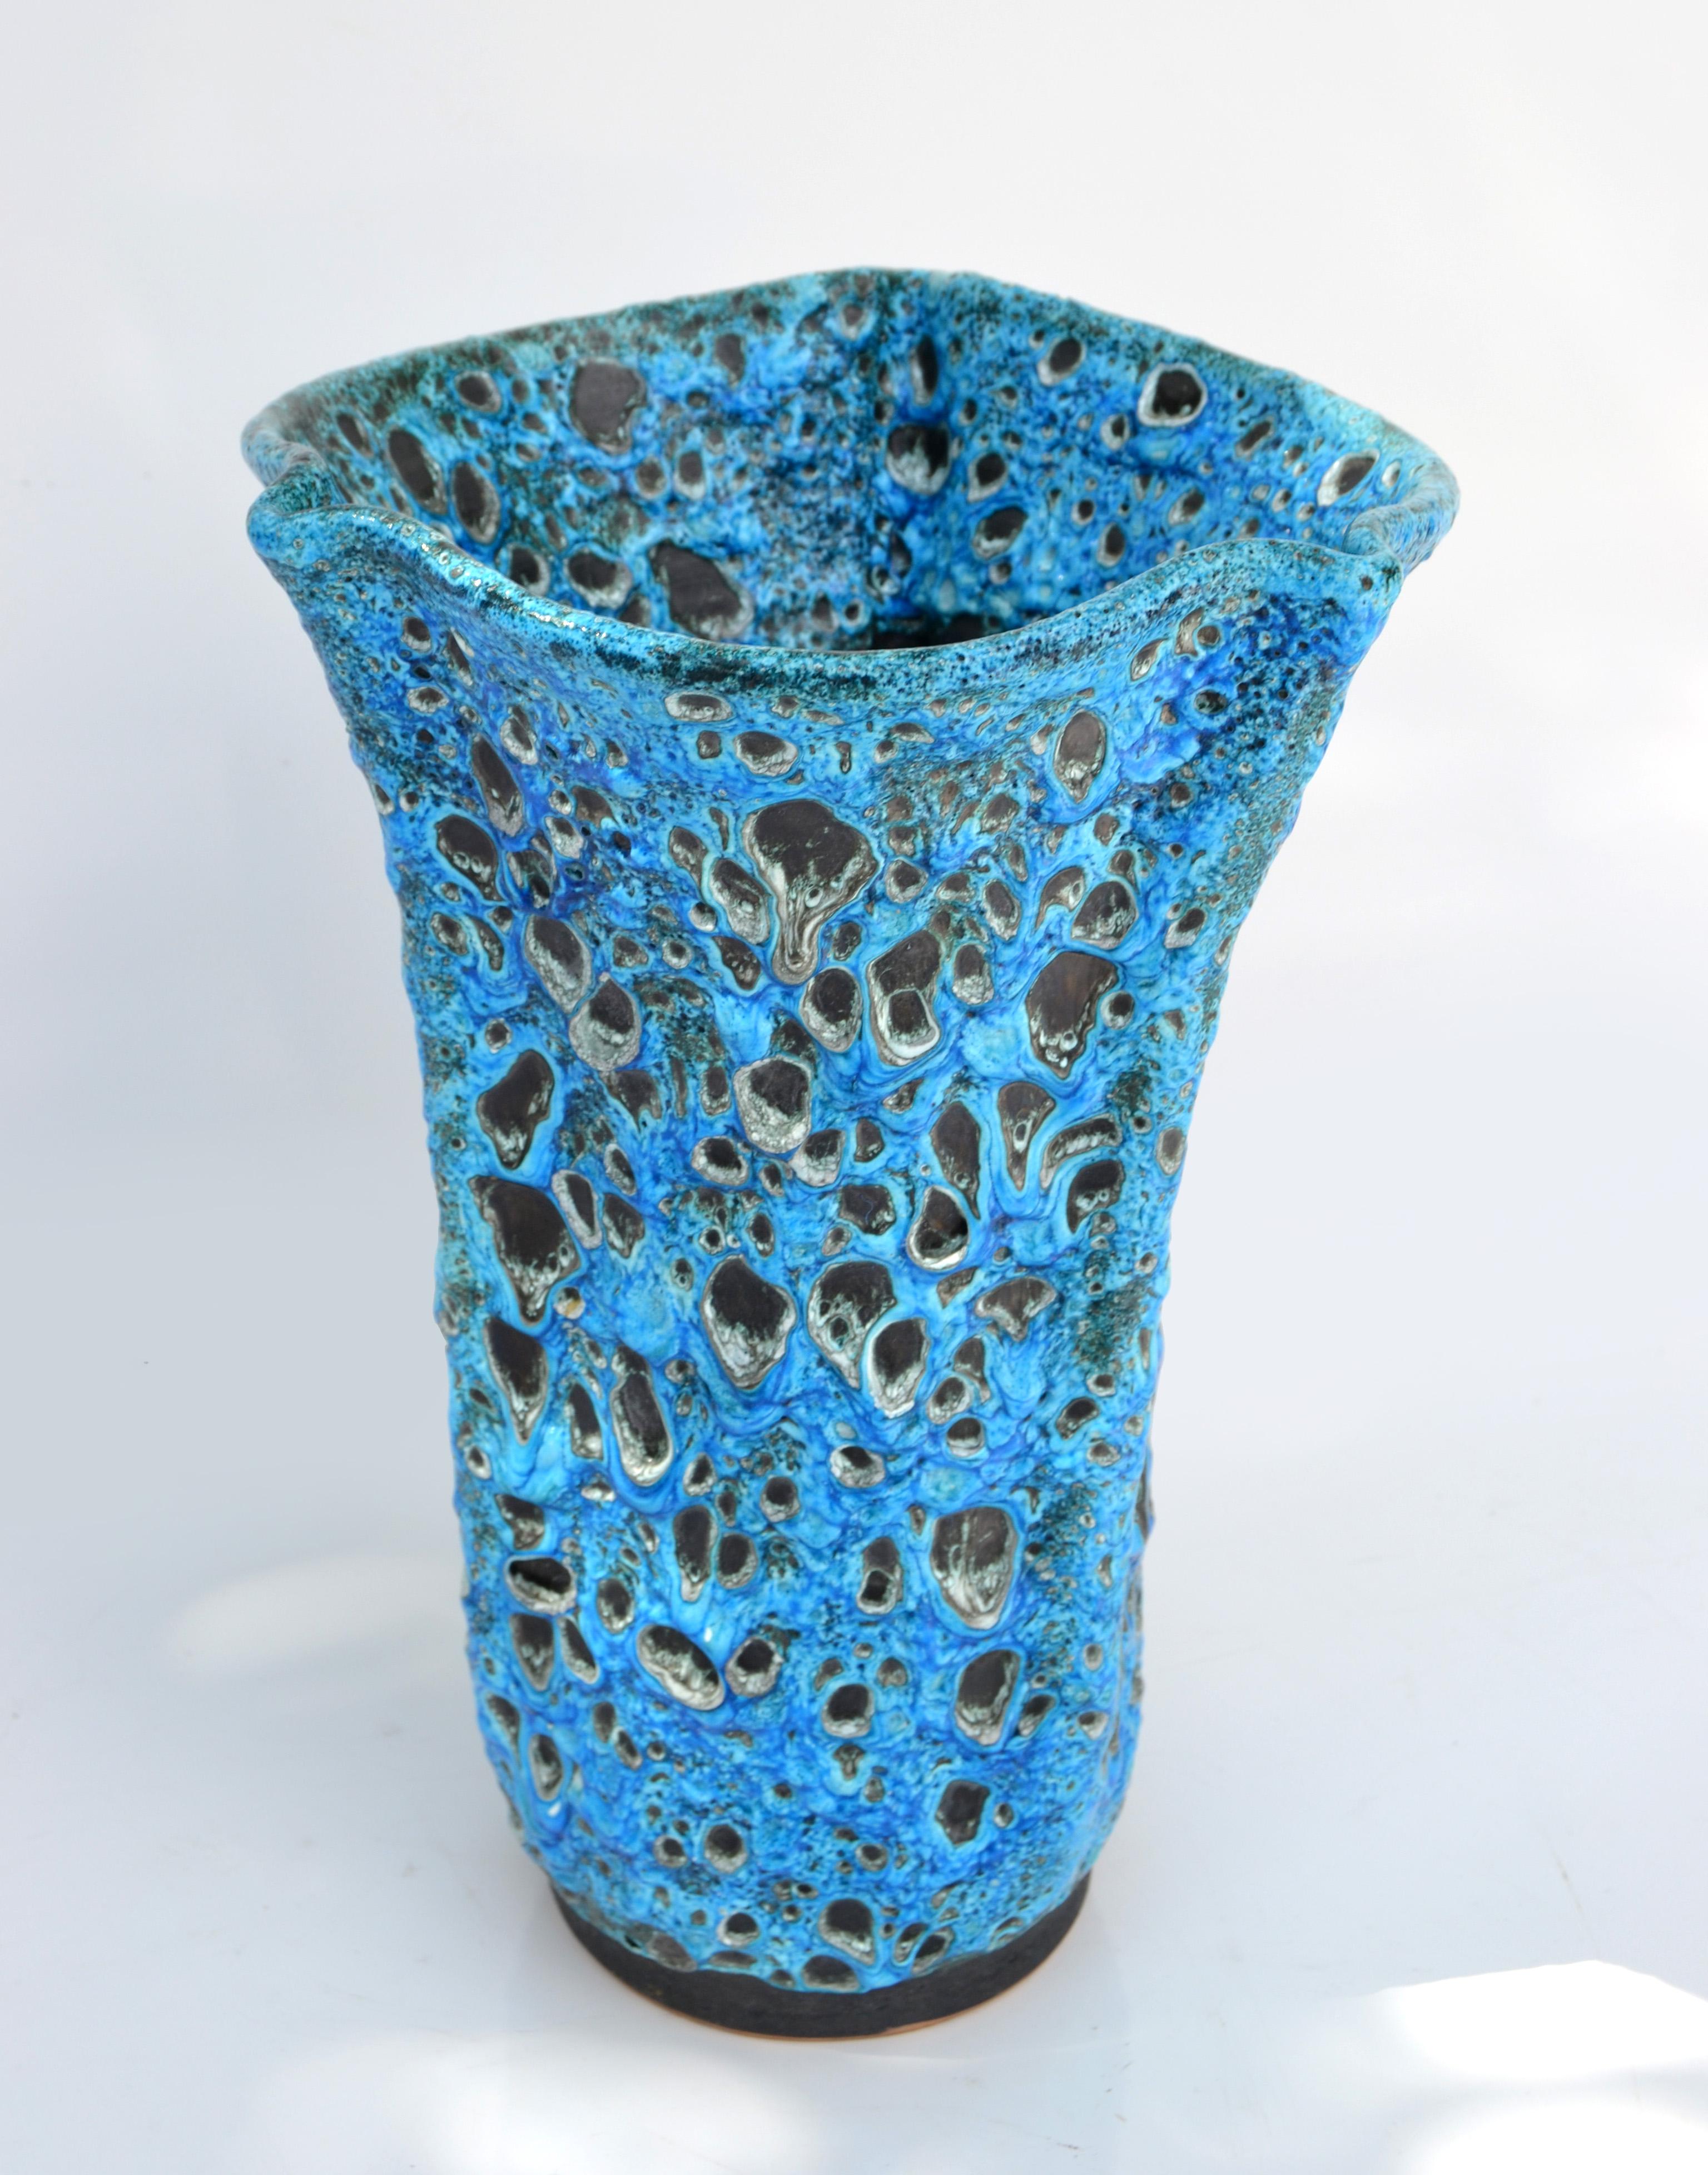 Hervorragende Mid-Century Modern handgefertigte Tropf glasierte Keramik Vase, Gefäß, Objekt der schönen Kunst in den Farben blau und schwarz.
Unterschrieben unter Vallauris Frankreich.
Vallauris ist das berühmte Dorf an der Côte d'Azur, in dem